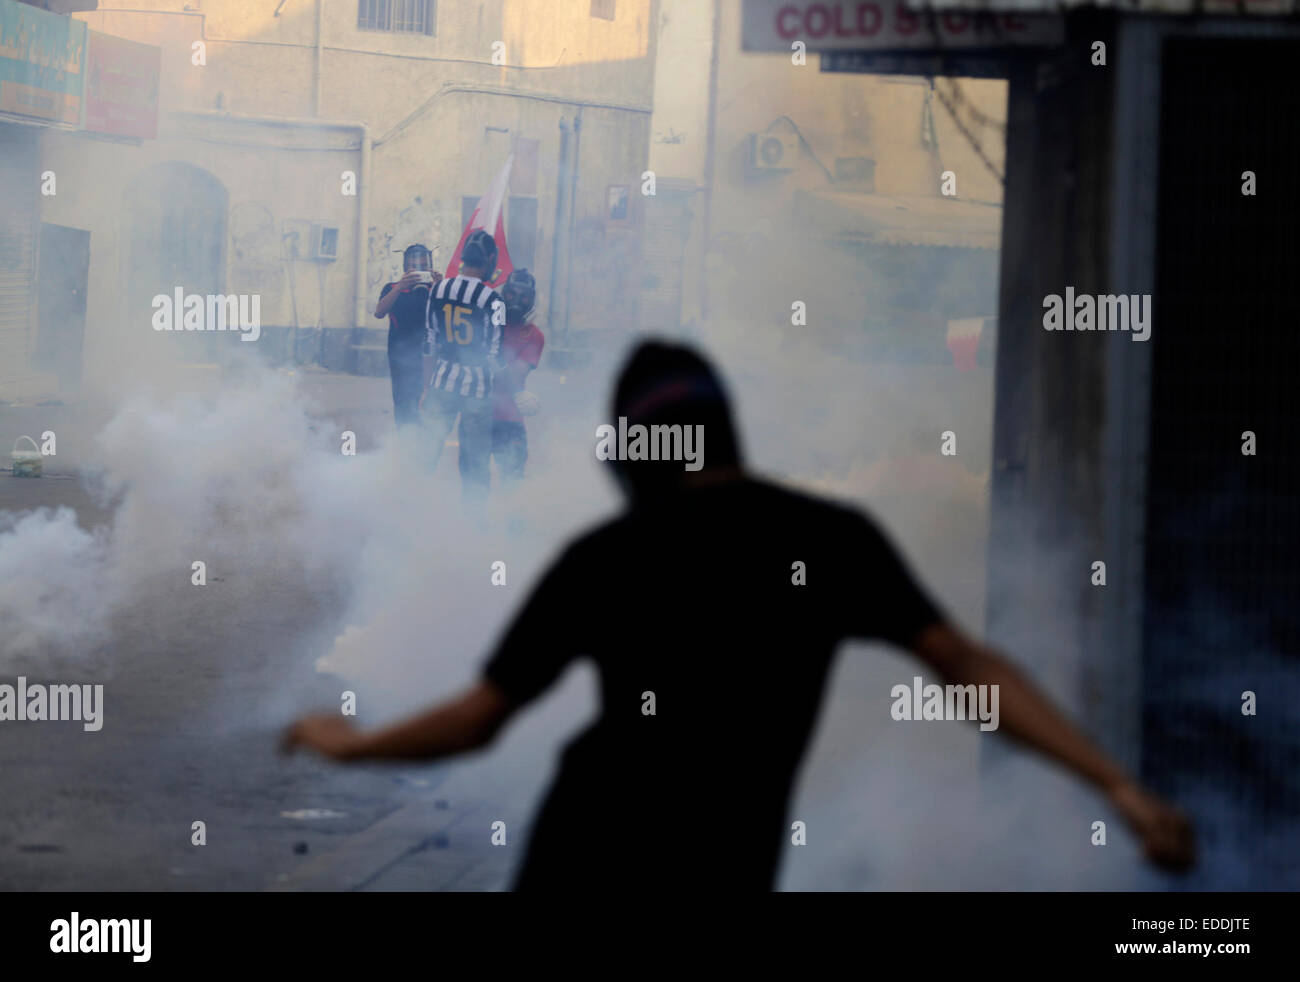 Manama, Bahreïn. 5Th Jan, 2015. Des manifestants anti-gouvernement bahreïni en conflit avec des policiers dans presse Anatolie Al Bilad, une banlieue de Manama, Bahreïn, le 5 janvier 2015. Manifestants ont demandé à l'opposition chiite bahreïni emprisonnés sans chef Cheikh Ali Salman. Cheikh Ali Salman a été commandé a tenu pendant 15 jours de plus en attendant l'enquête sur des accusations de violation de la loi, de Bahreïn, a annoncé lundi des poursuites. Credit : Hasan Jamali/Xinhua/Alamy Live News Banque D'Images